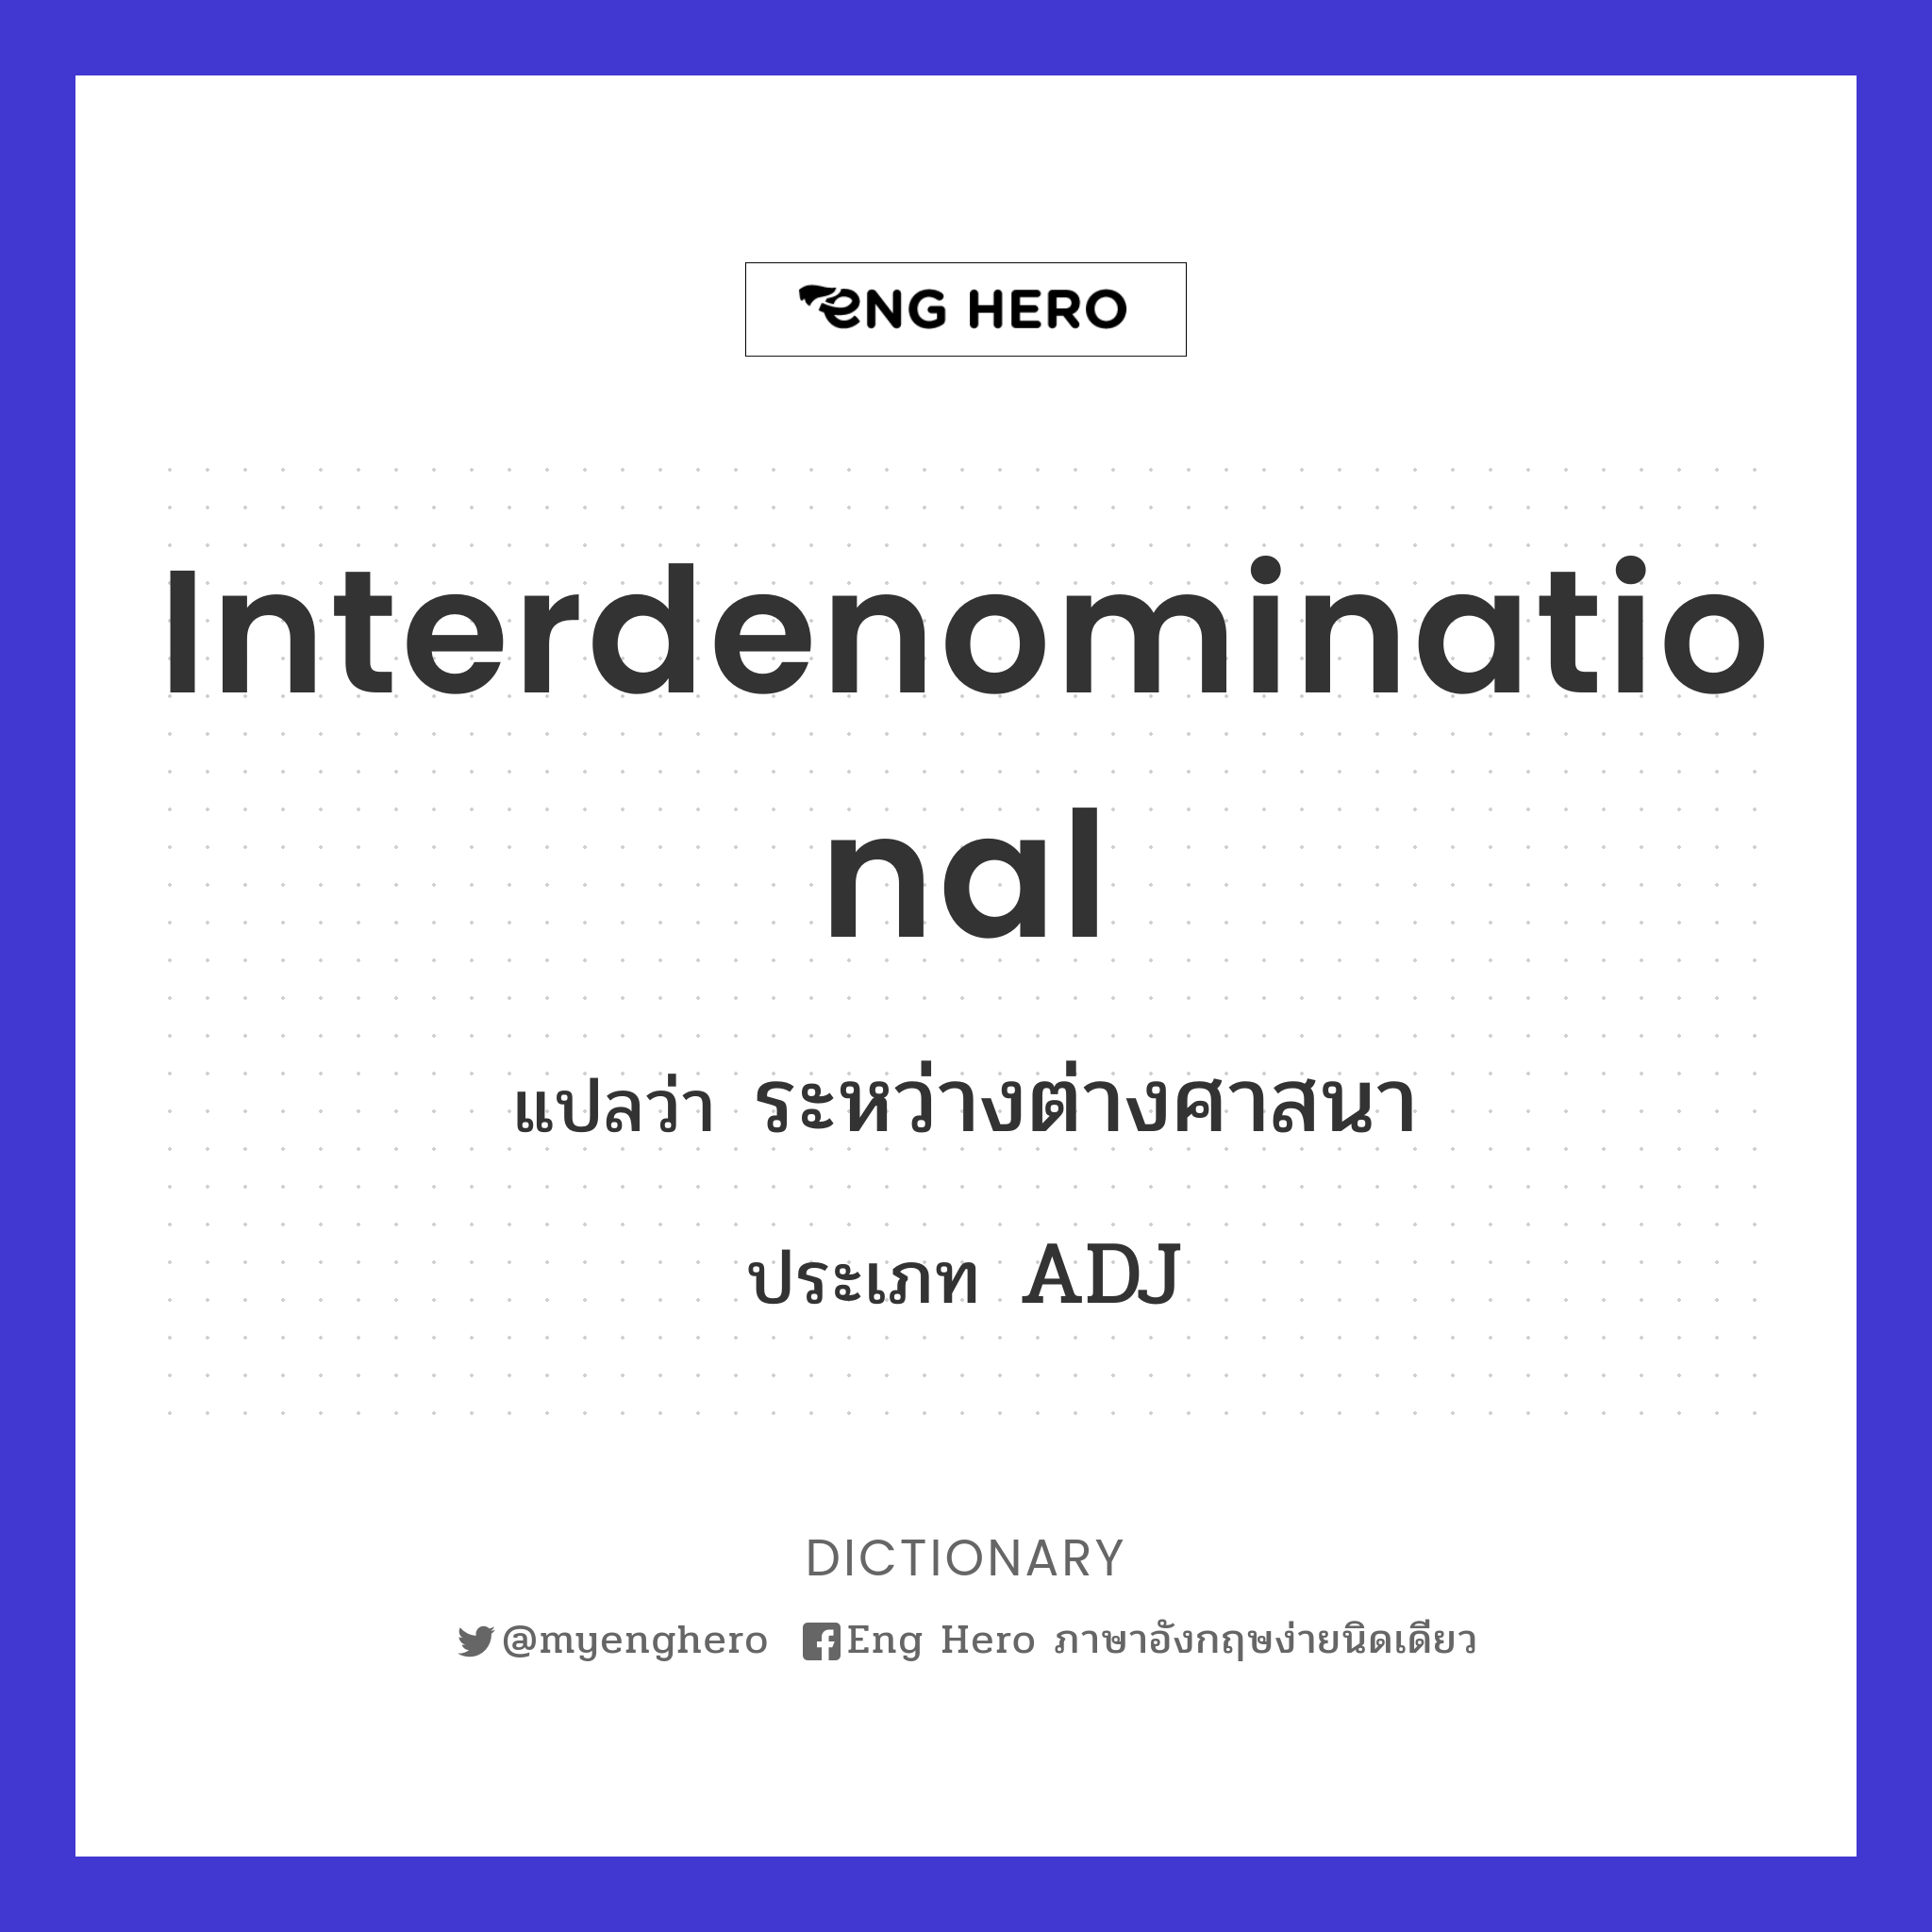 interdenominational